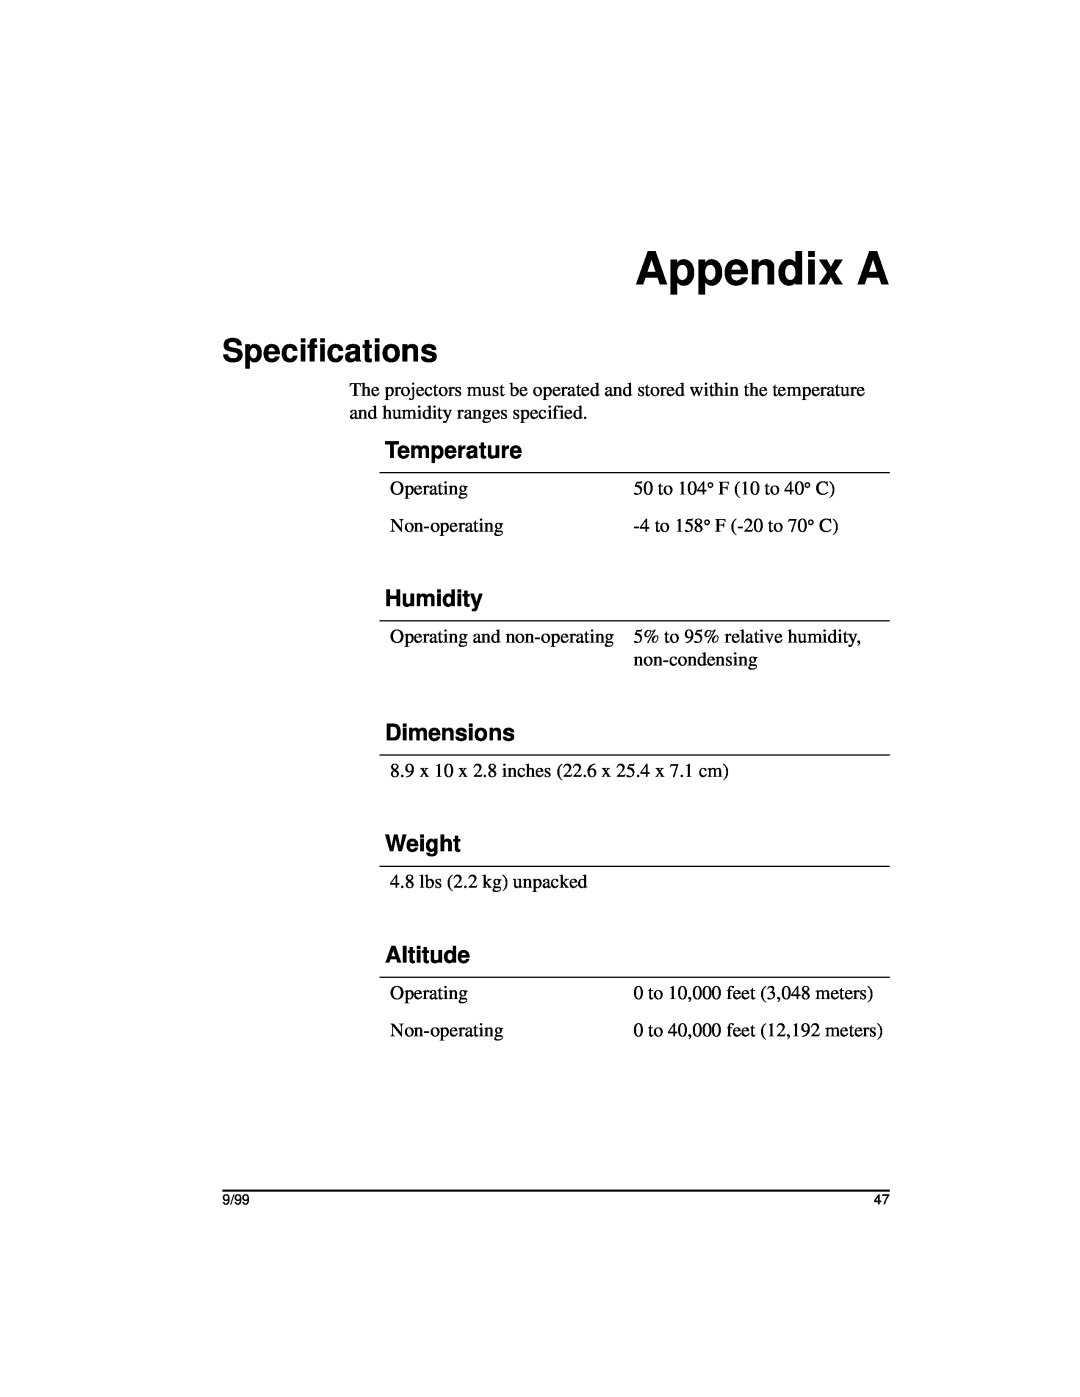 Kodak DP2000 manual Appendix A, Specifications, Temperature, Humidity, Dimensions, Weight, Altitude 